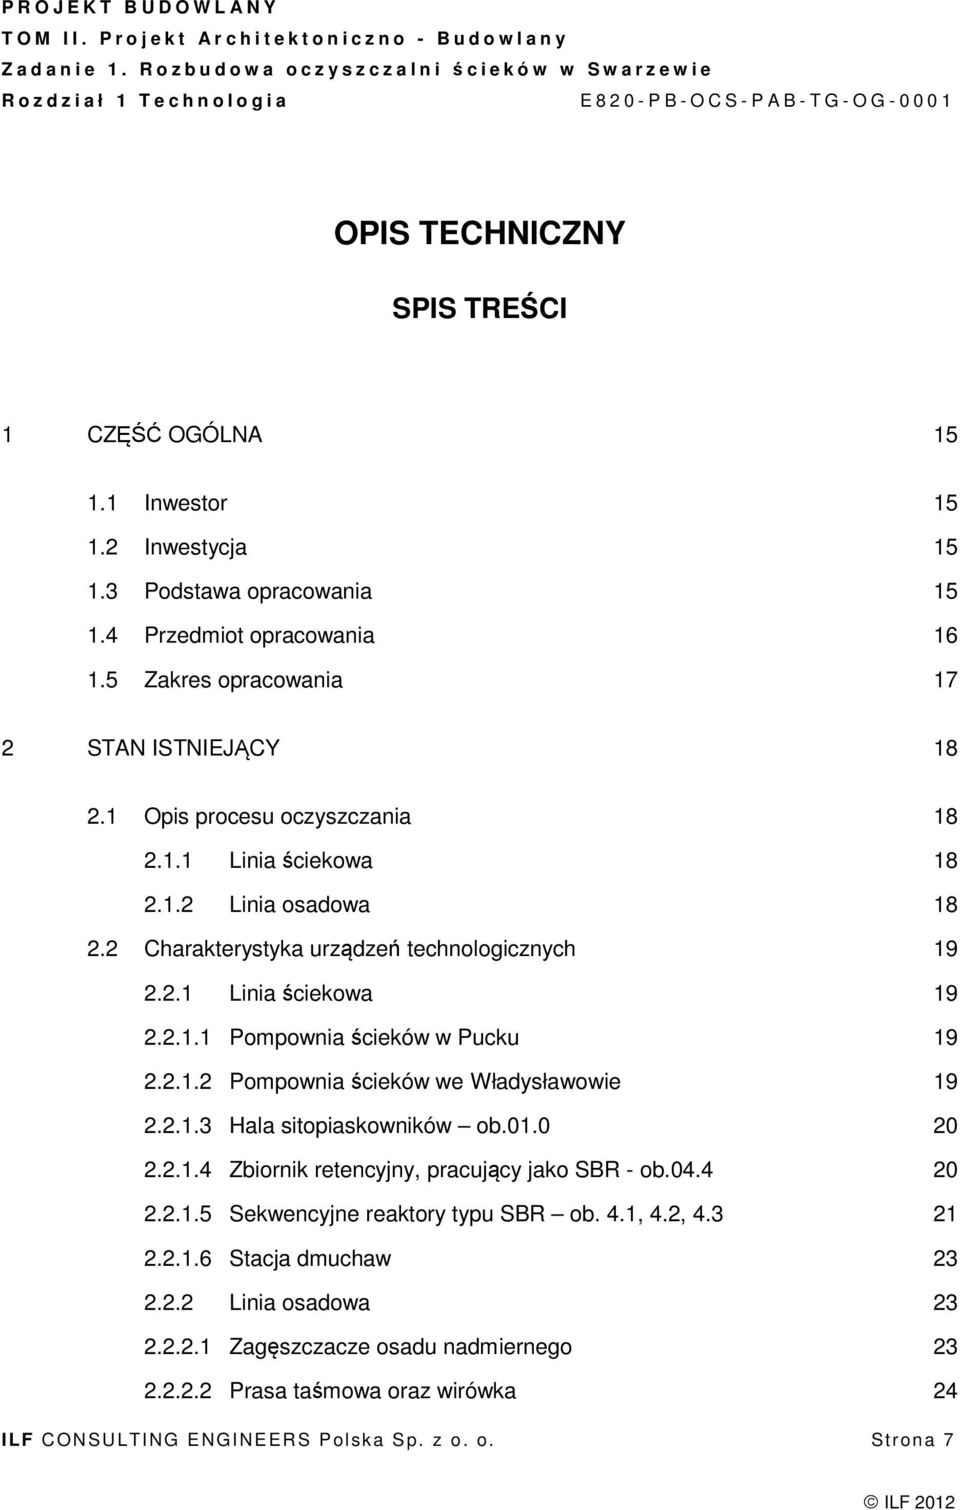 2.1.2 Pompownia ścieków we Władysławowie 19 2.2.1.3 Hala sitopiaskowników ob.01.0 20 2.2.1.4 Zbiornik retencyjny, pracujący jako SBR - ob.04.4 20 2.2.1.5 Sekwencyjne reaktory typu SBR ob. 4.